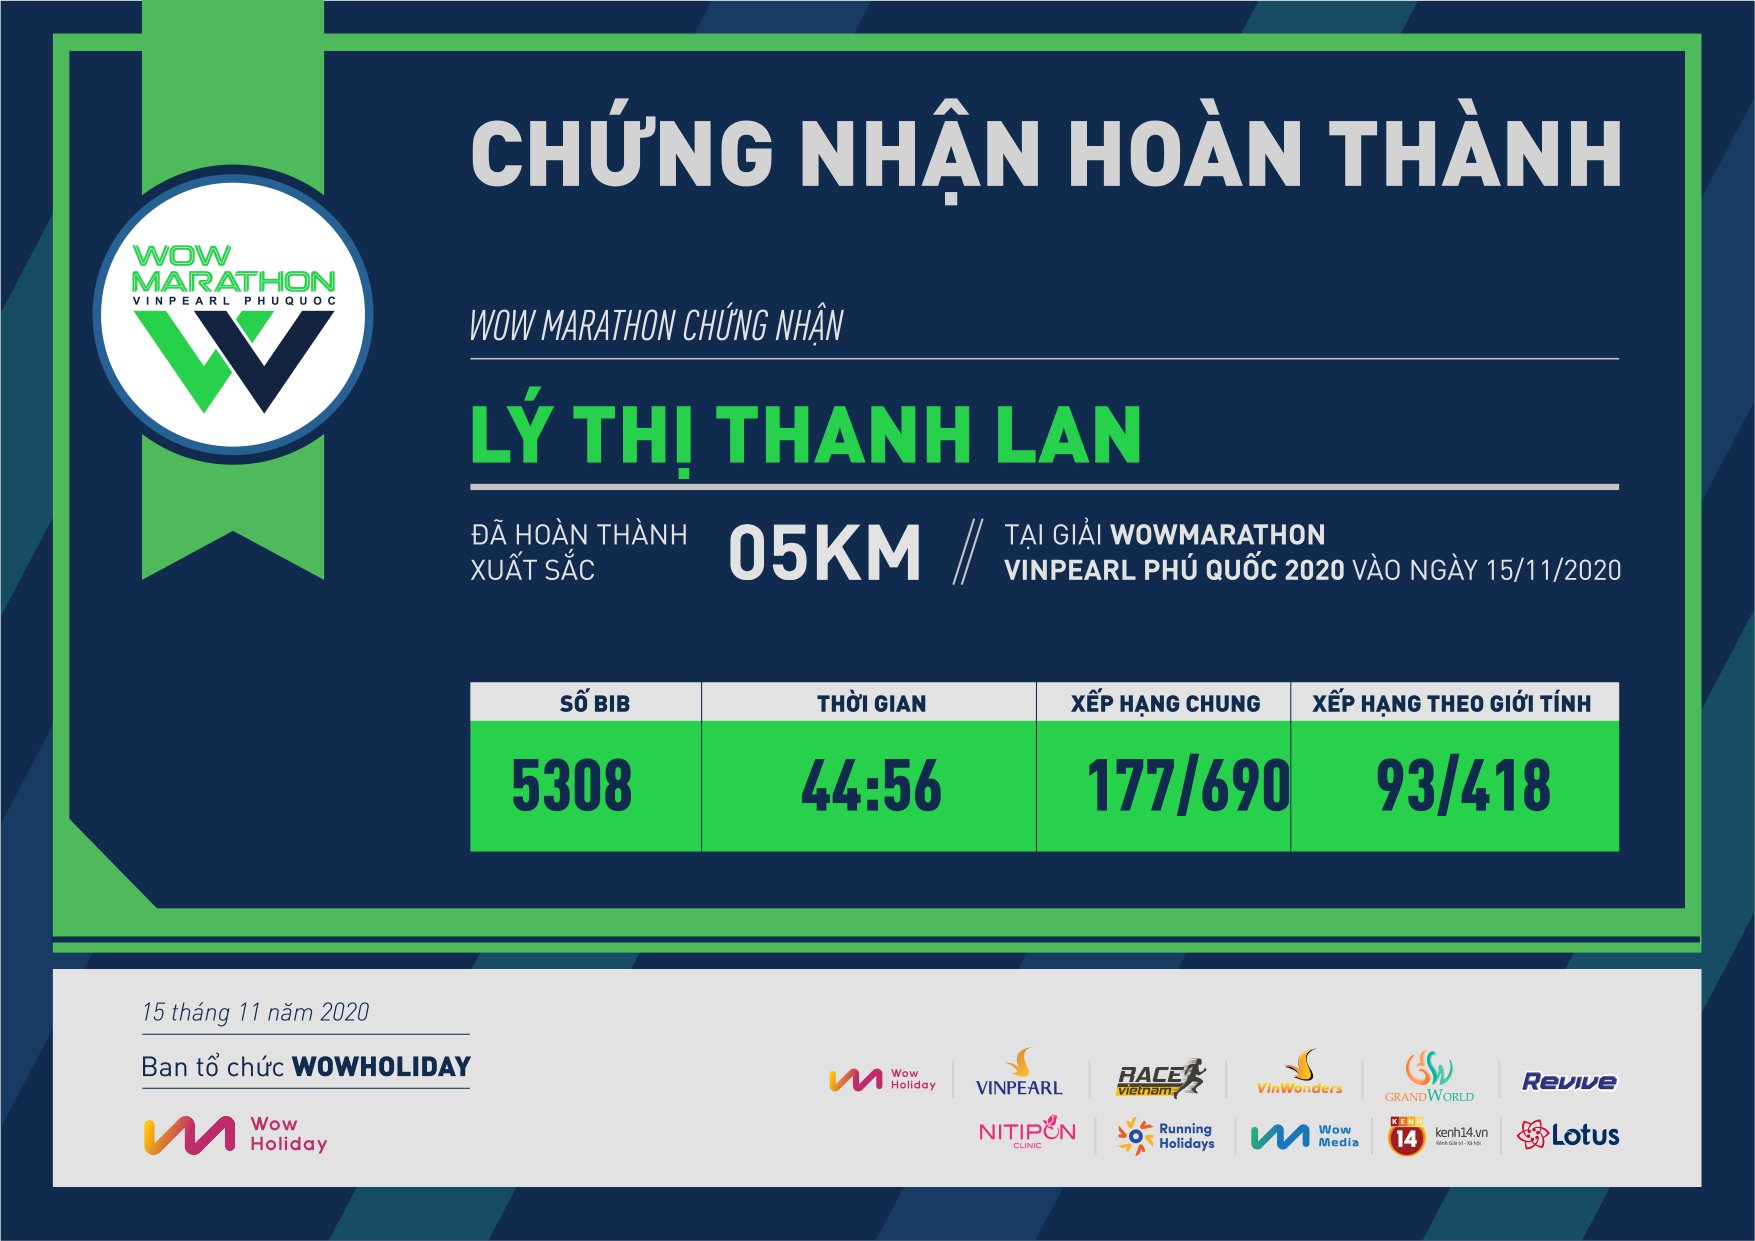 5308 - Lý Thị Thanh Lan